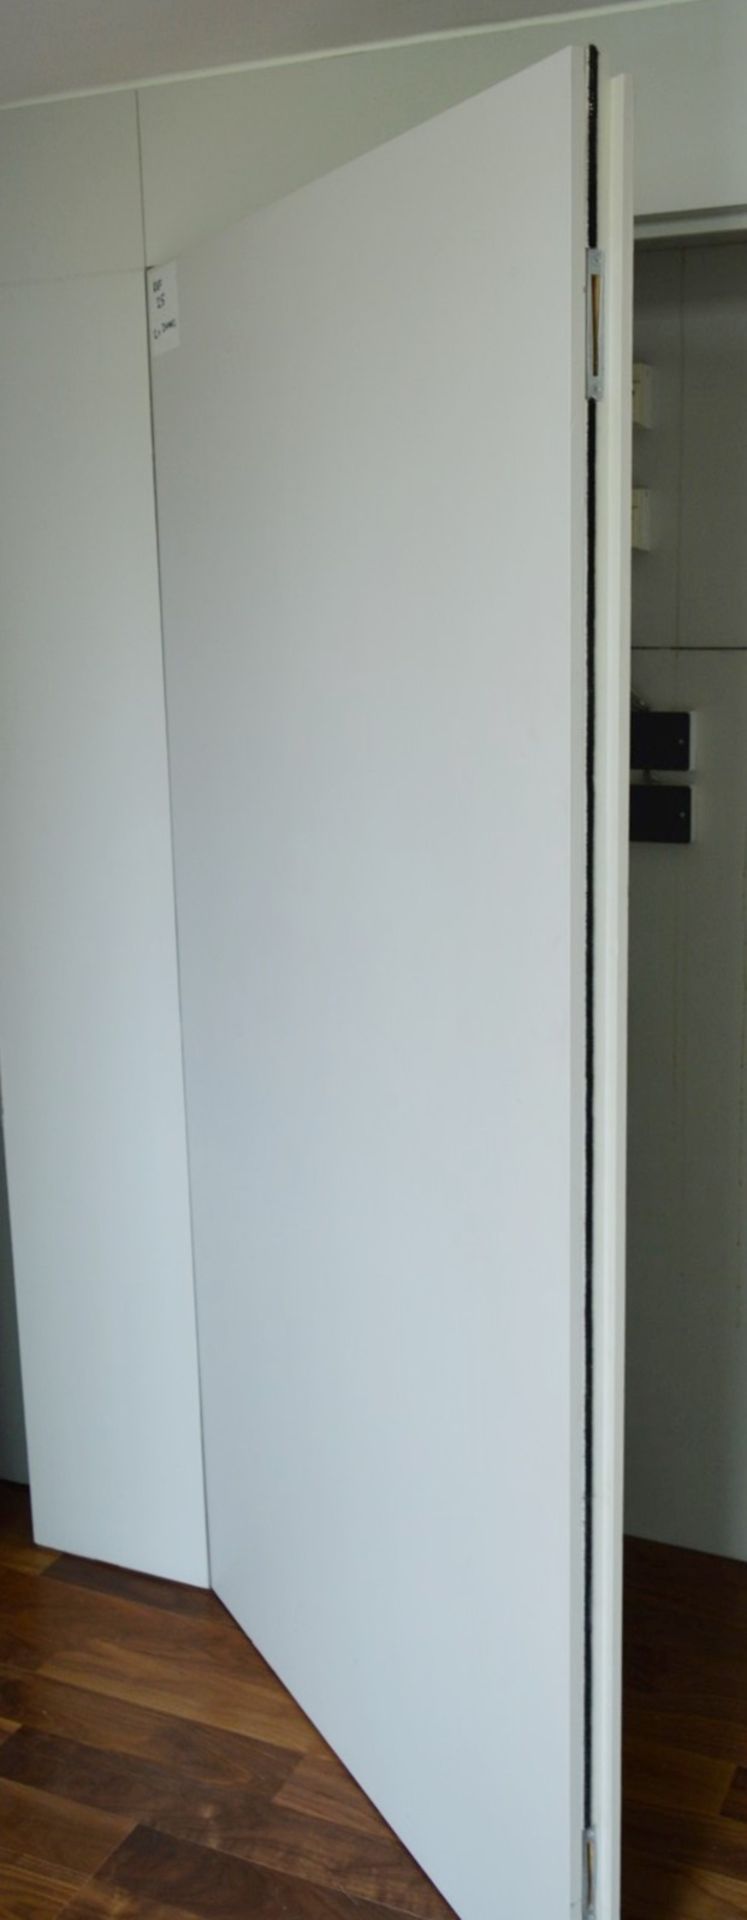 2 x Internal Cupboard Doors - Each Door Measures H102 x W196.5 x D6cm - Ref 25 - CL230 - Location: - Image 4 of 10